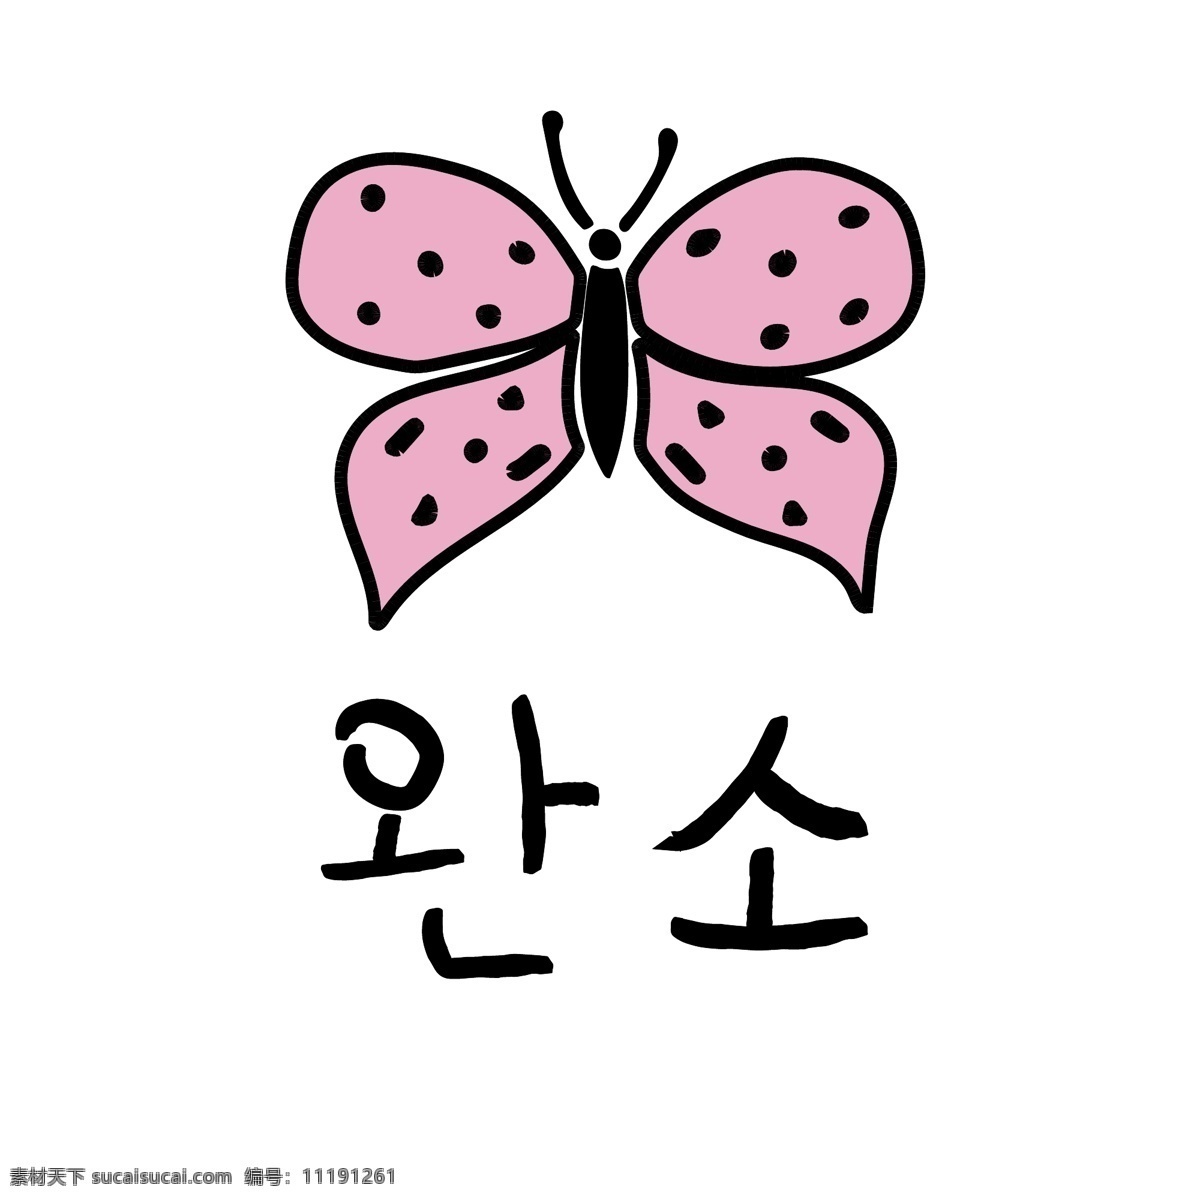 蝴蝶 韩国 常用语 完 牛 肝药 对话 红色 漫画 小的 向量 完结 日常用语 卡通